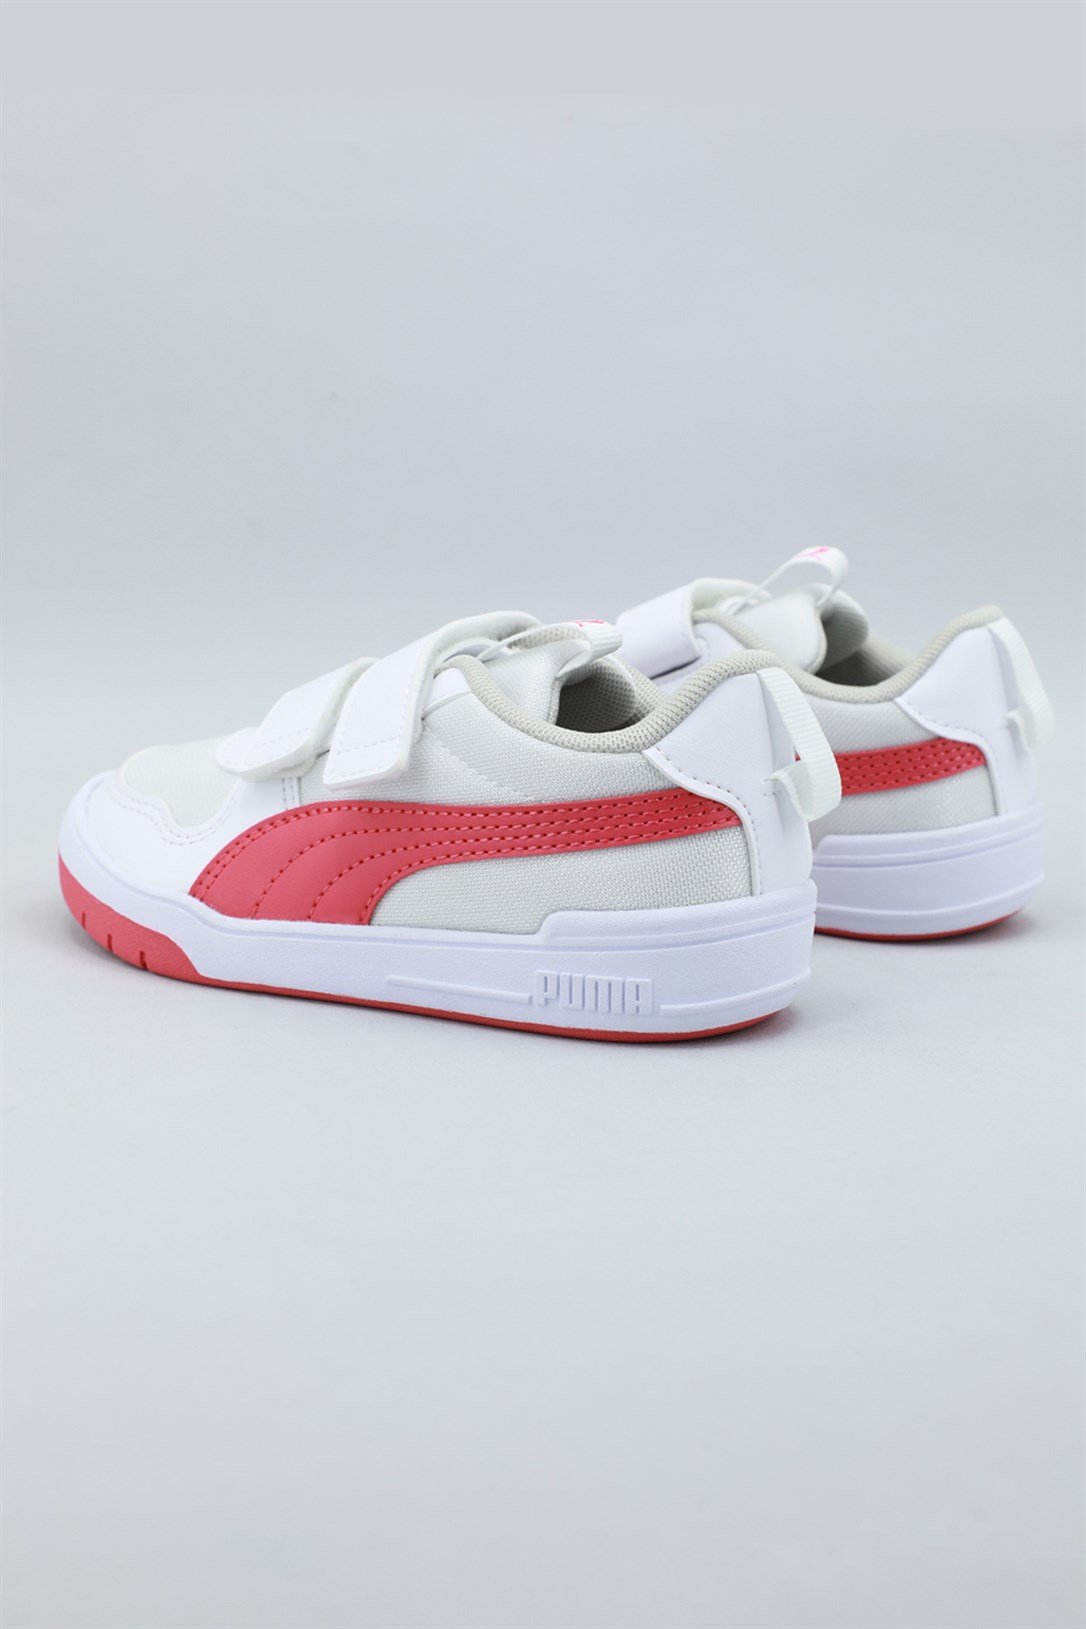 Puma Günlük Nefes Alır Beyaz Pembe Çocuk Spor Ayakkabı 380845-04 | Ayakkabı  City